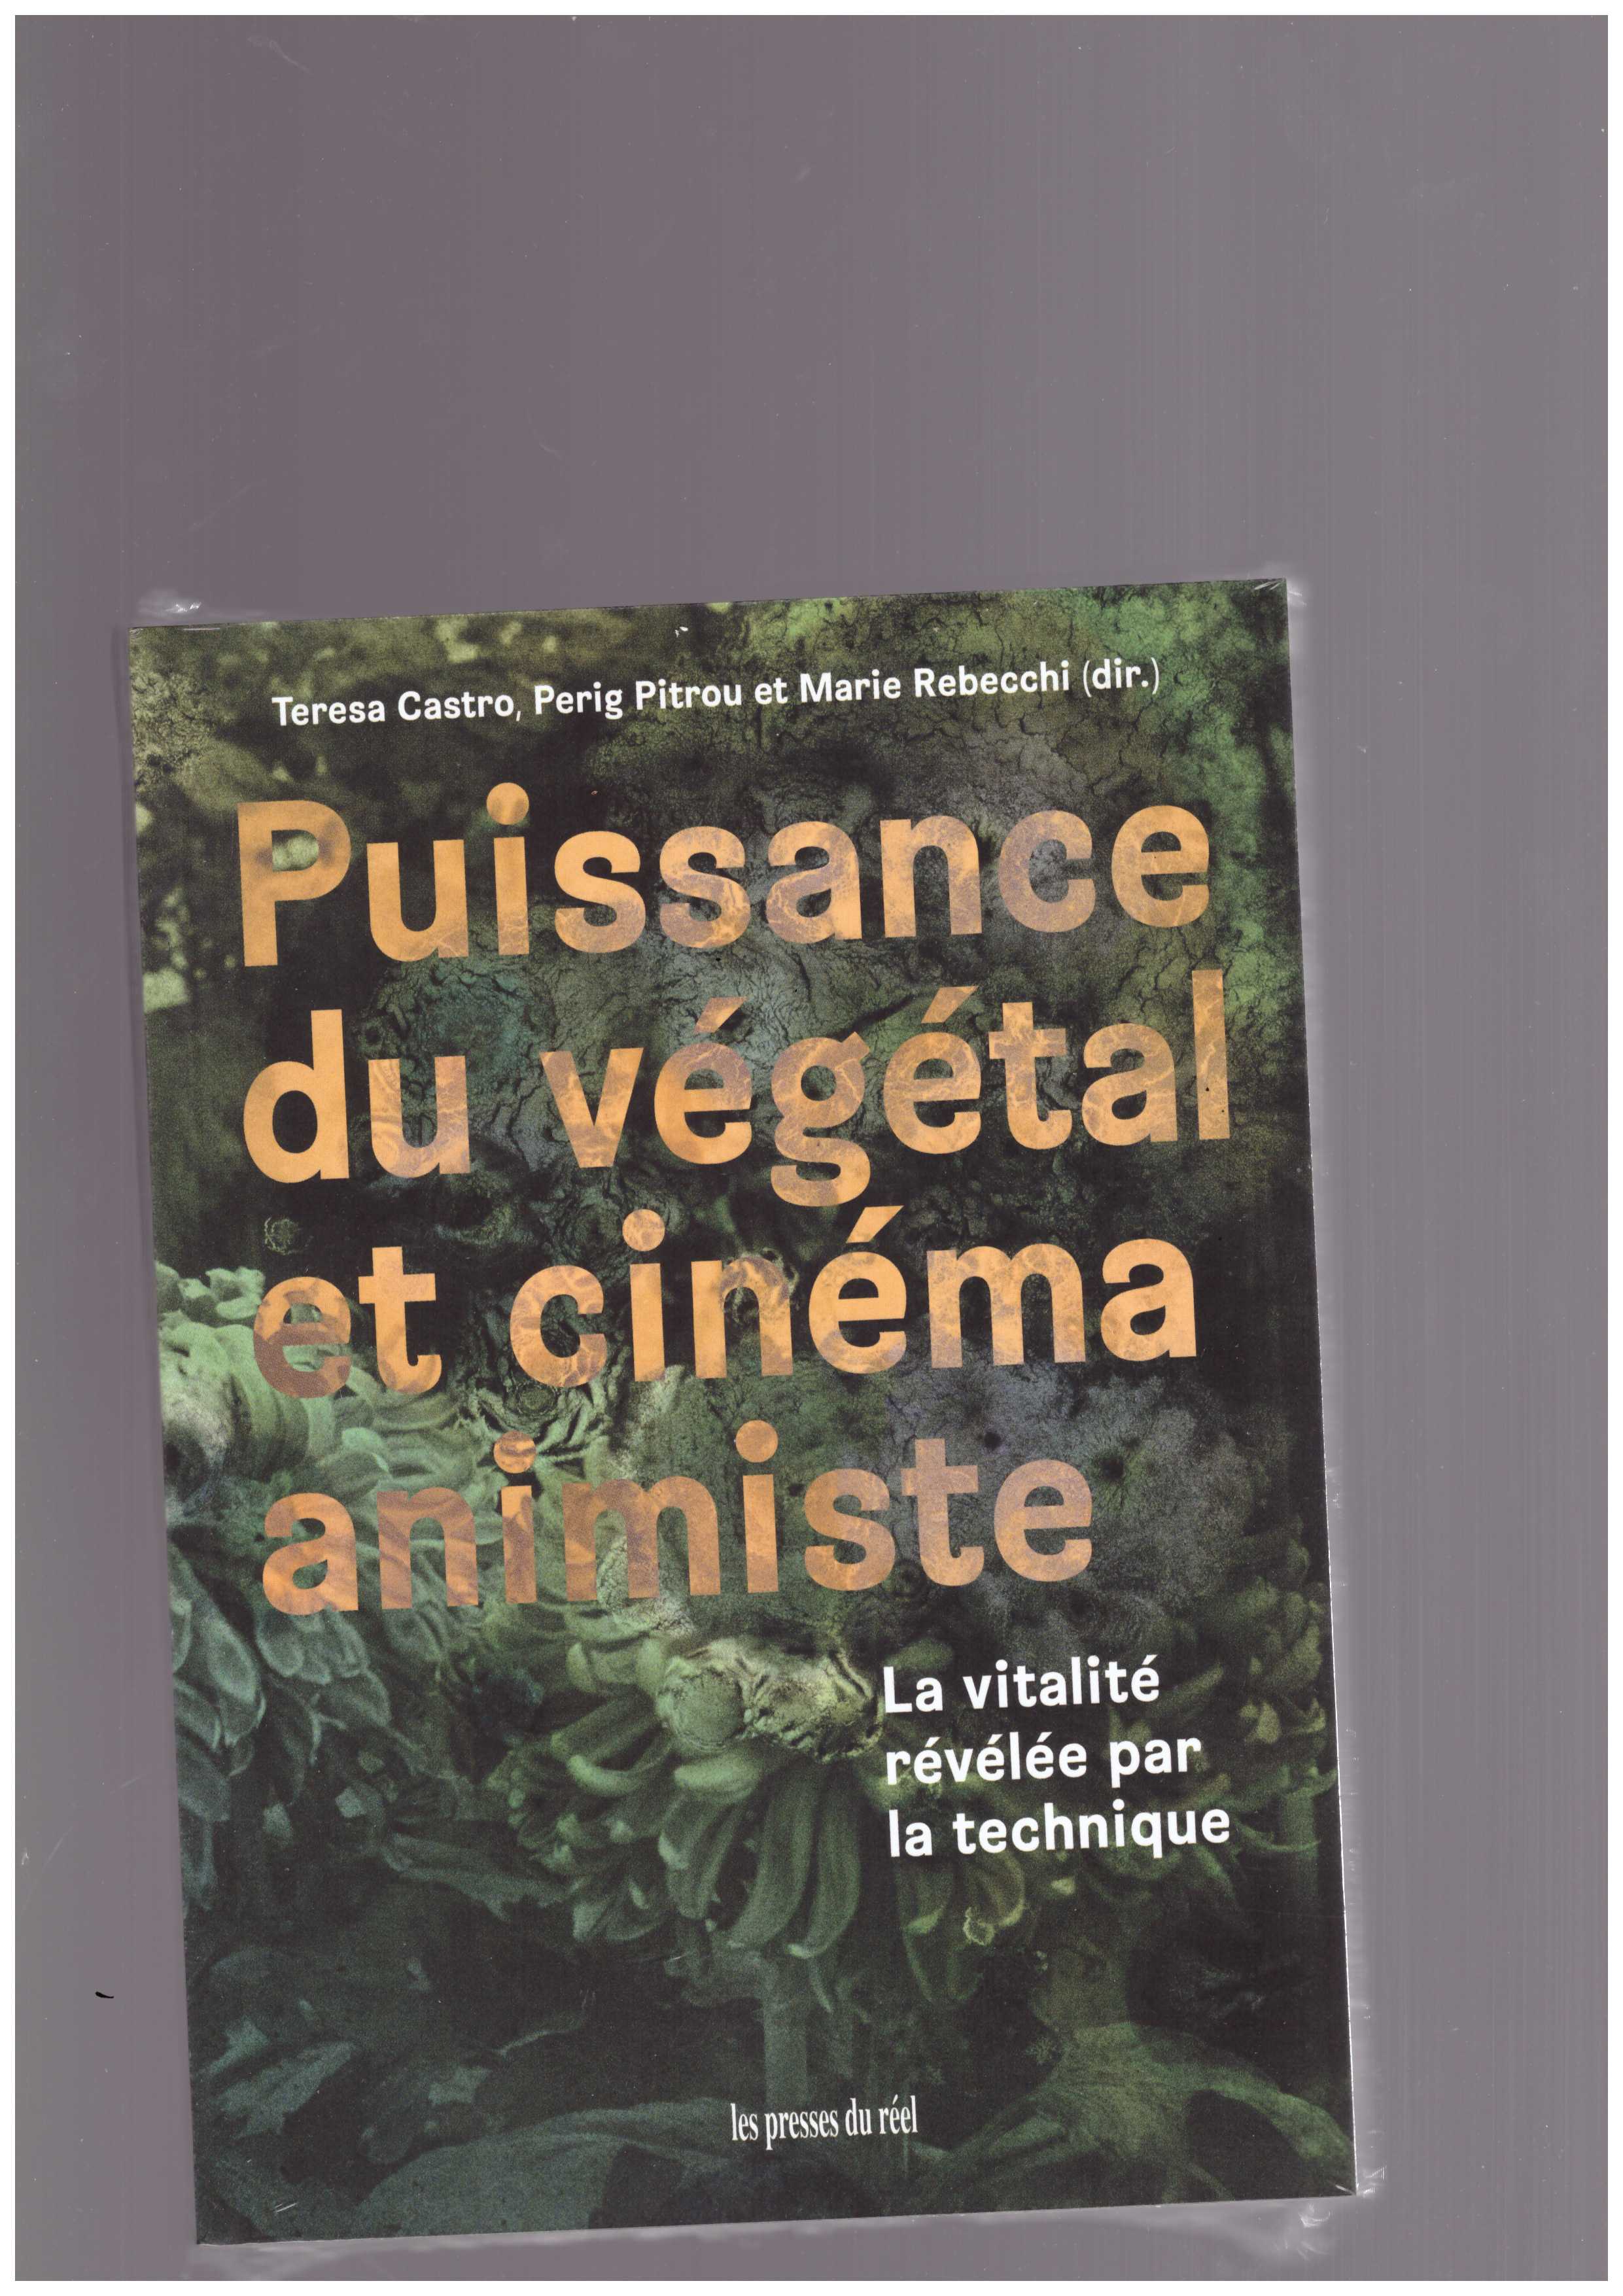 CASTRO, Teresa; PITROU, Perig; REBECCHI, Marie (eds.) - Puissance du végétal et cinéma animiste